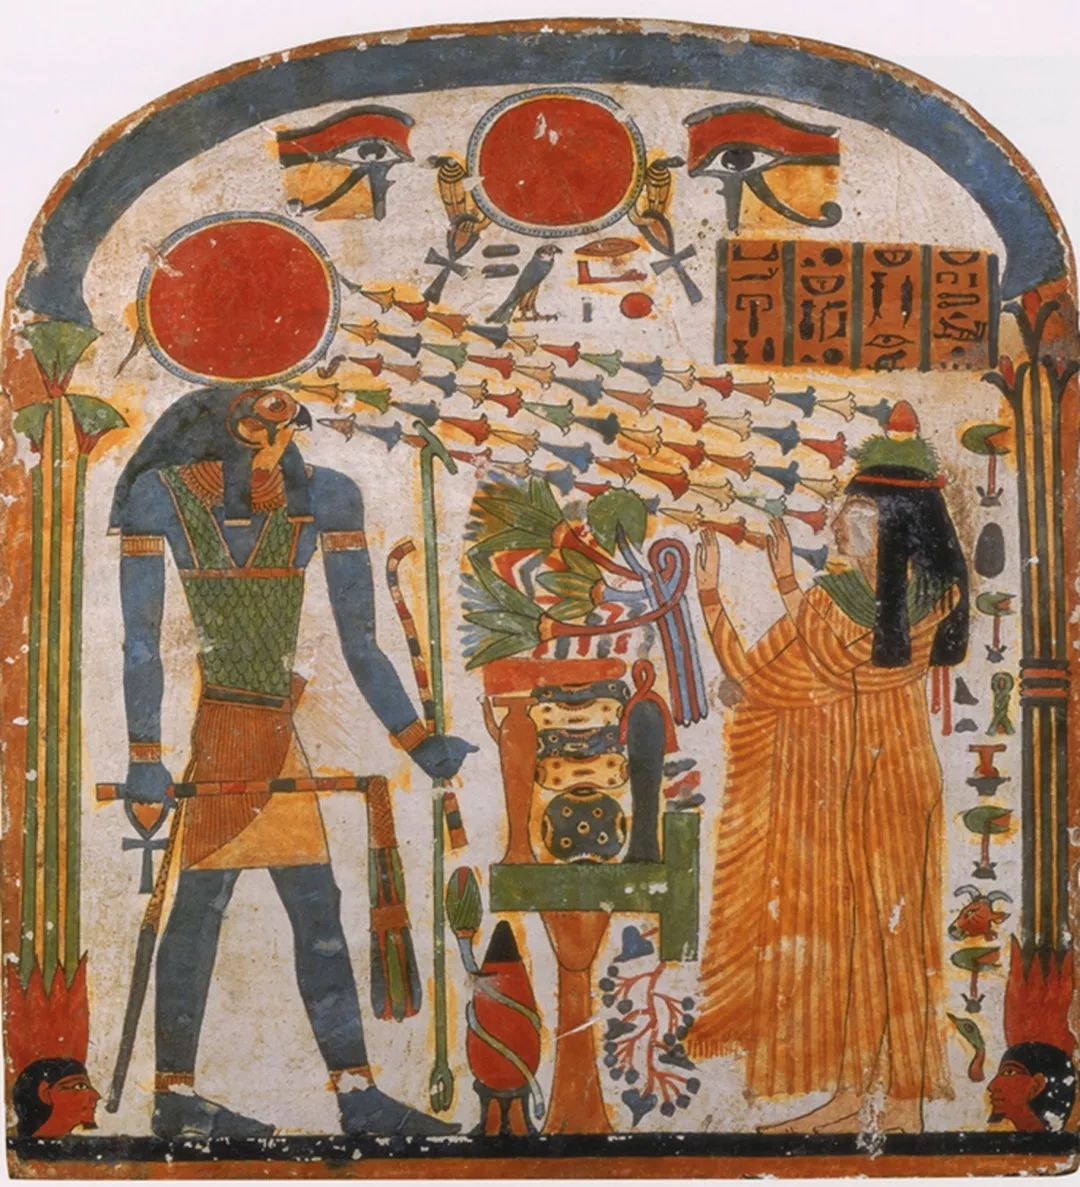 《埃及壁画》带你揭秘法老贵族生活 